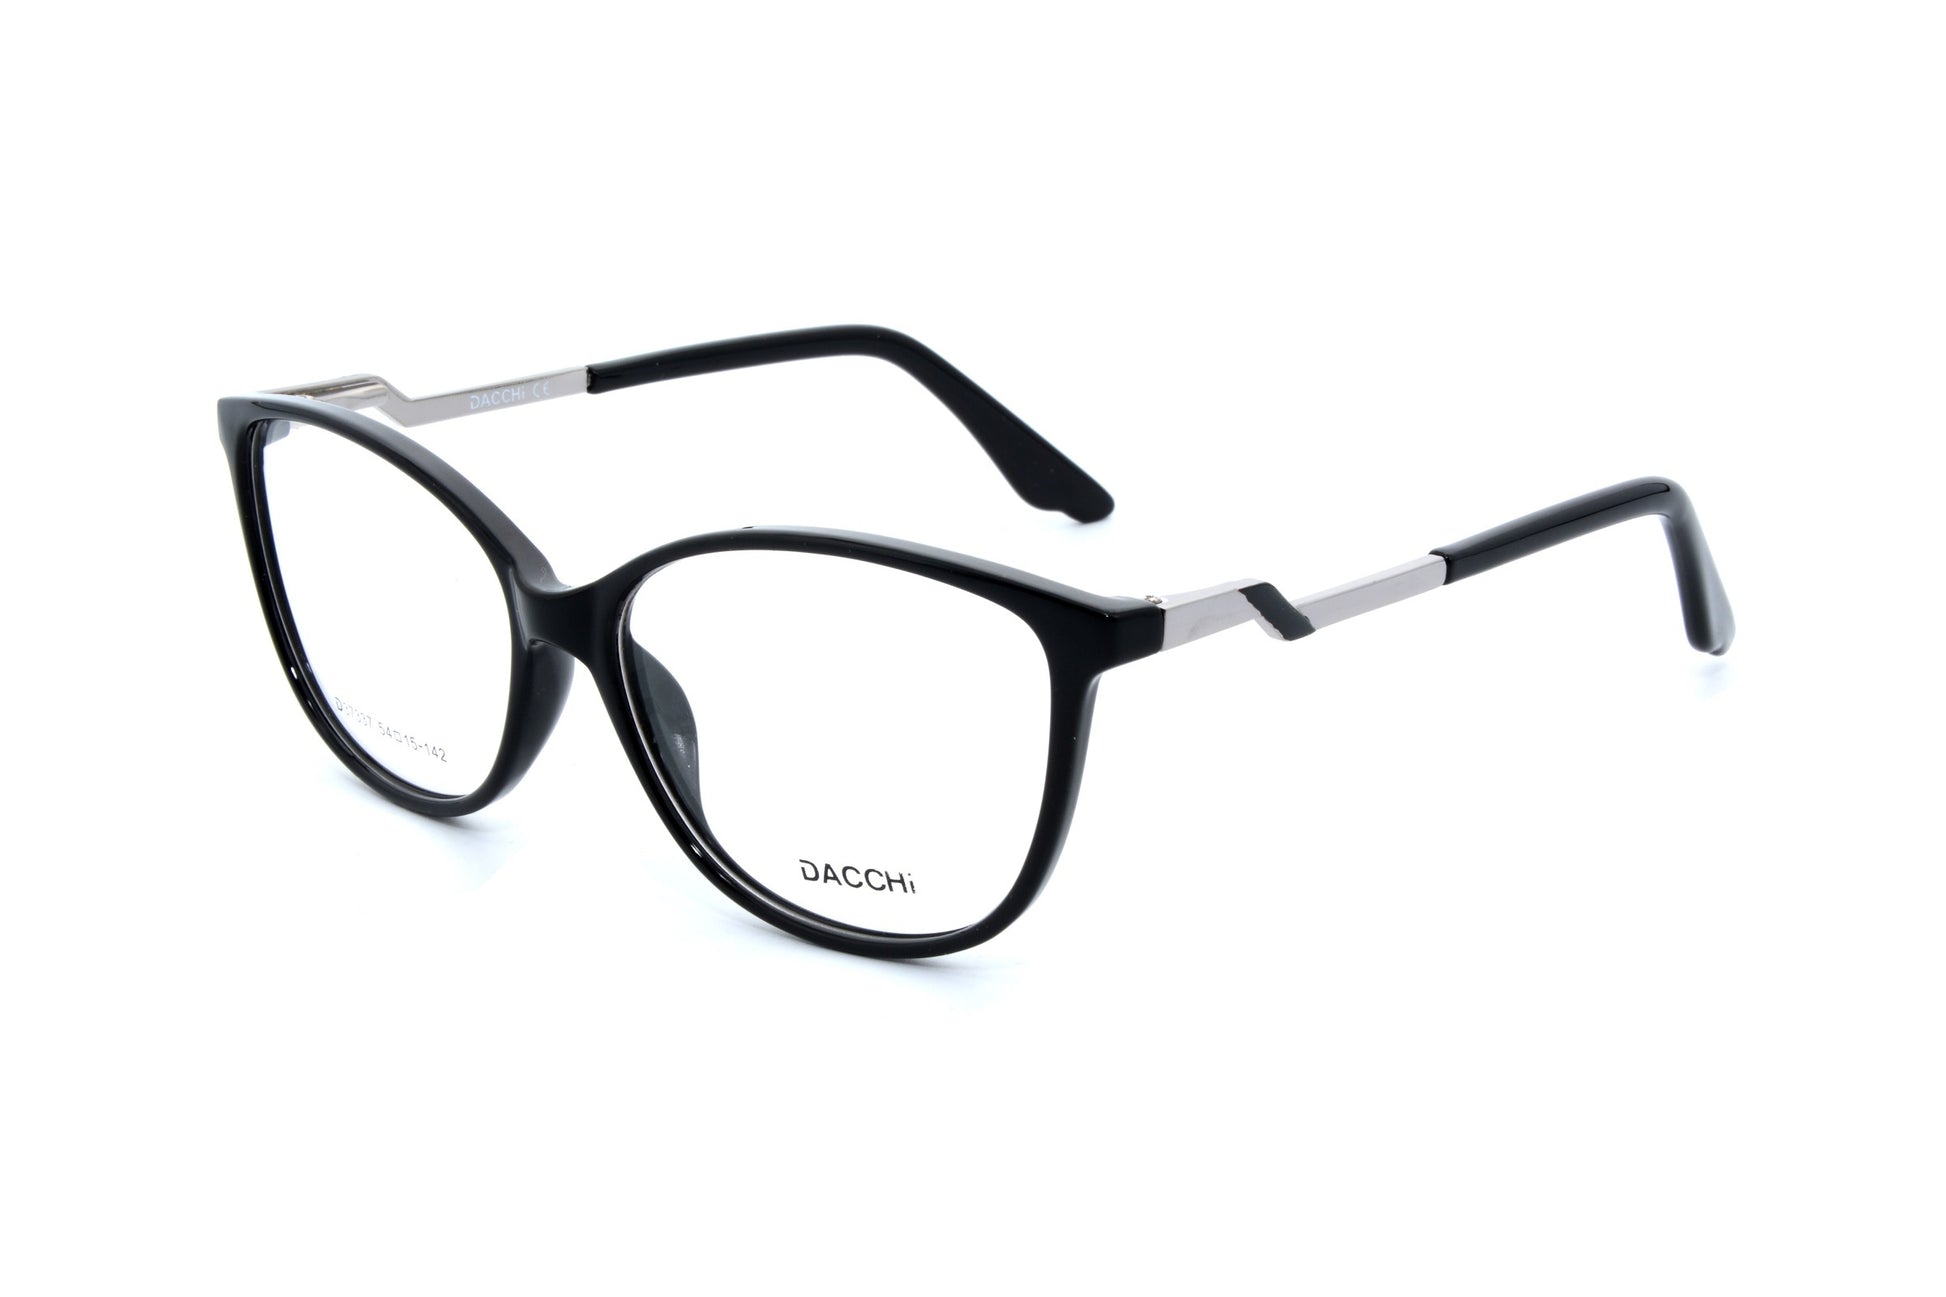 Dacchi eyewear 37337, C1 - Optics Trading